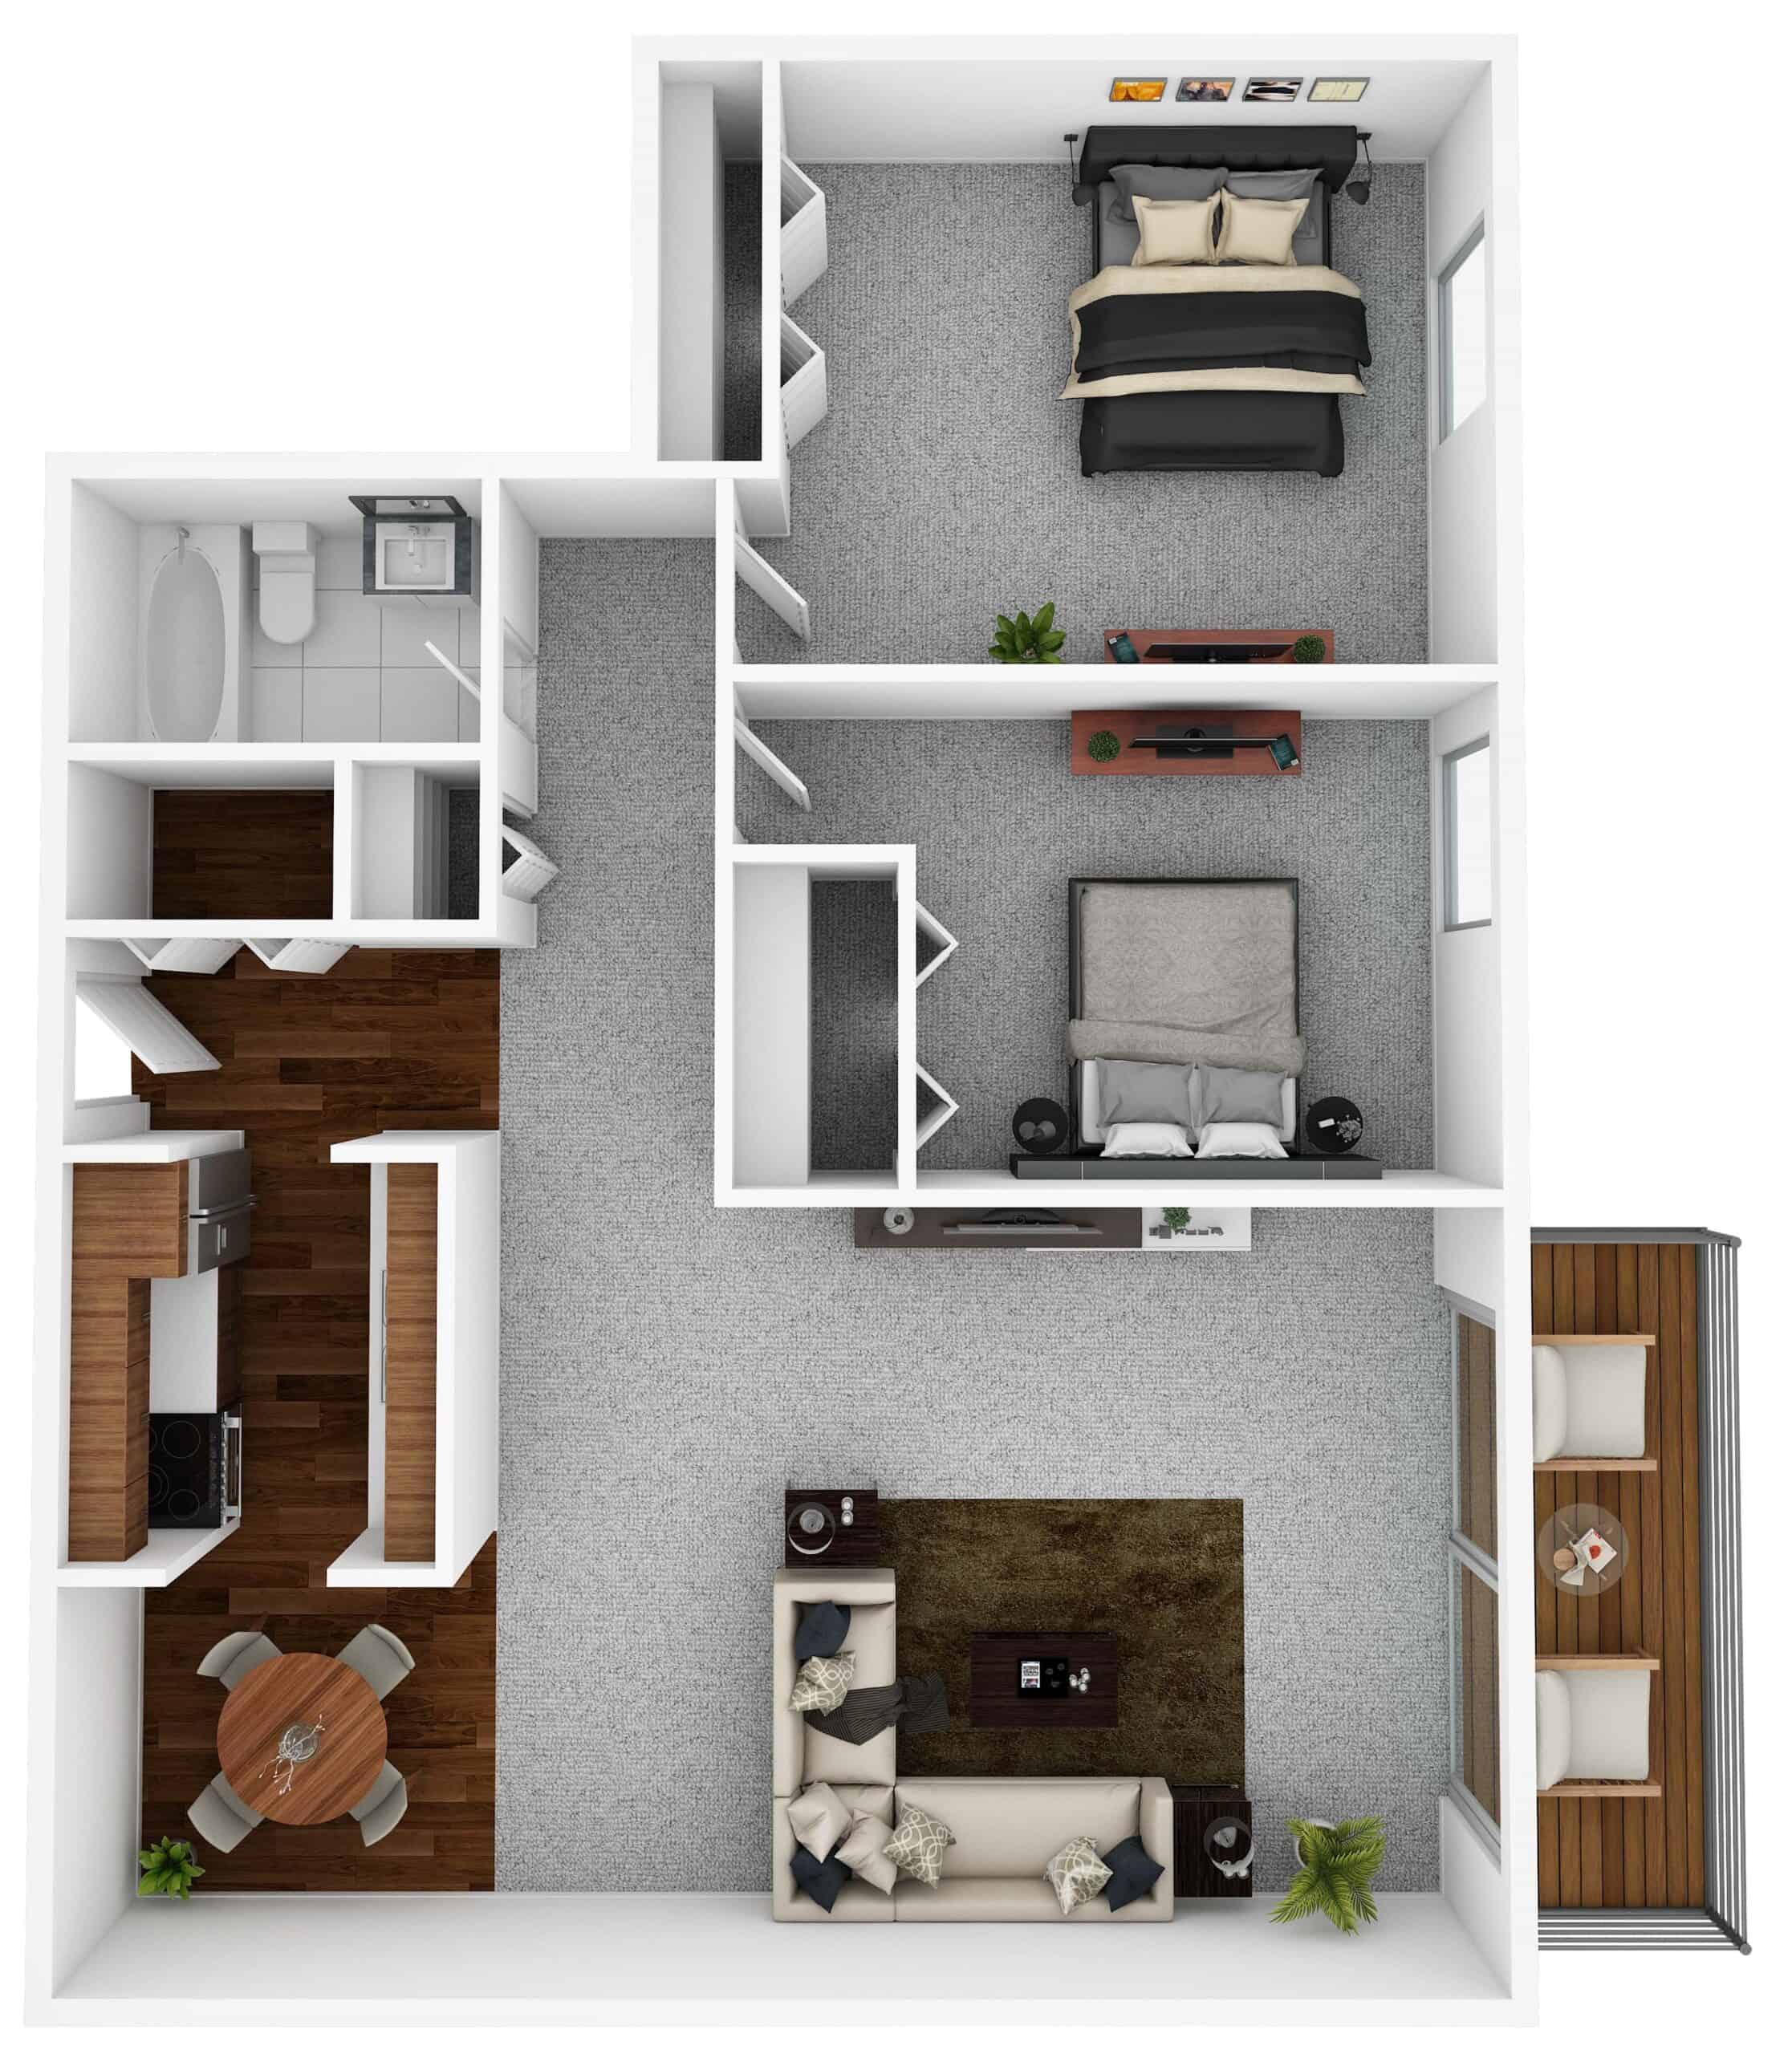 Floor plan of the 2 bedroom, 1 Bathroom apartment